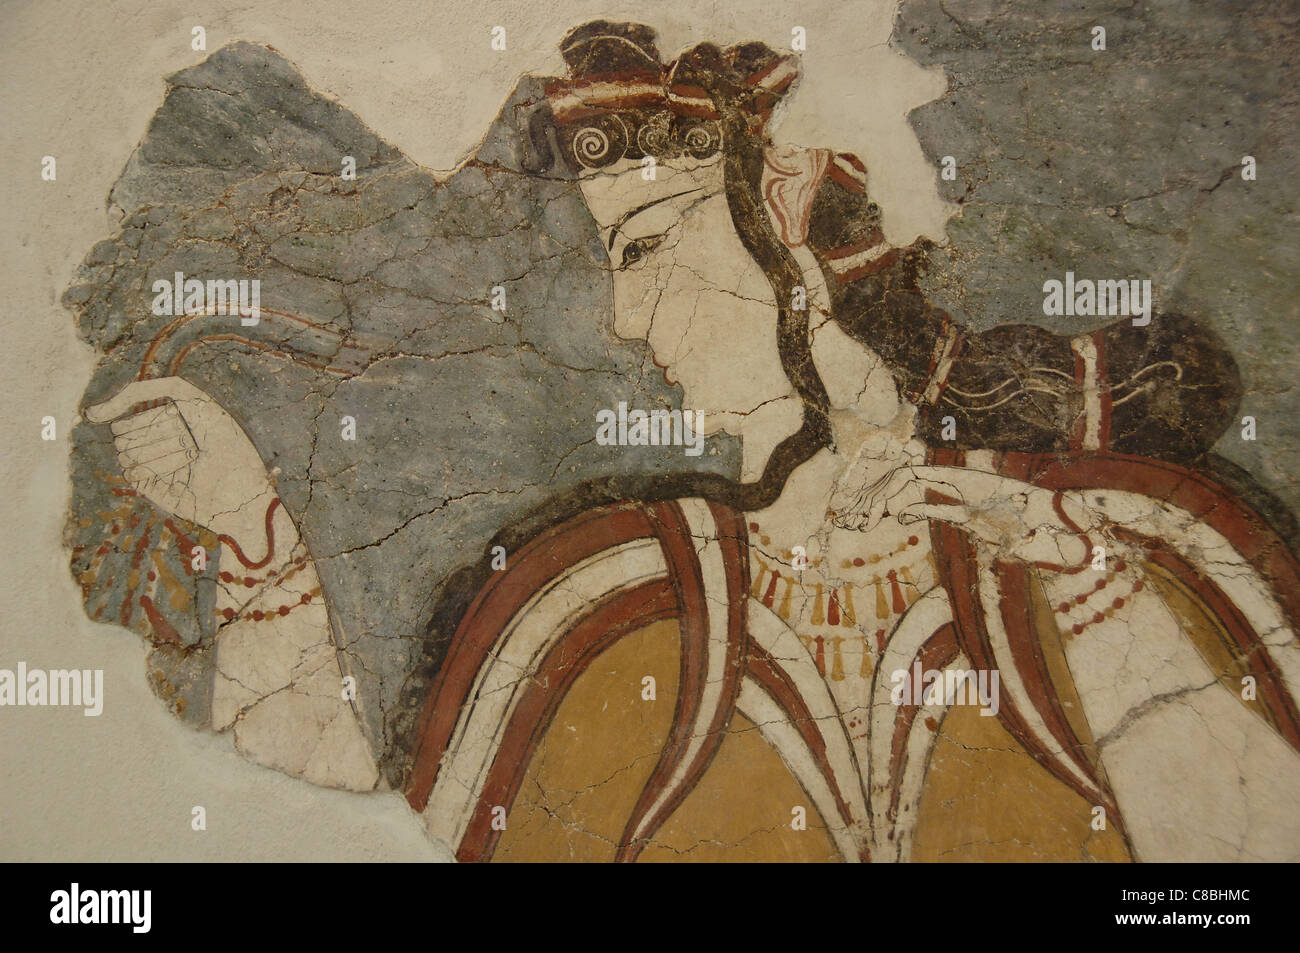 Arte micénico Grecia. El fresco de la Virgen de Micenas o los micénicos. Siglo XIII A.C. representa una diosa. Foto de stock